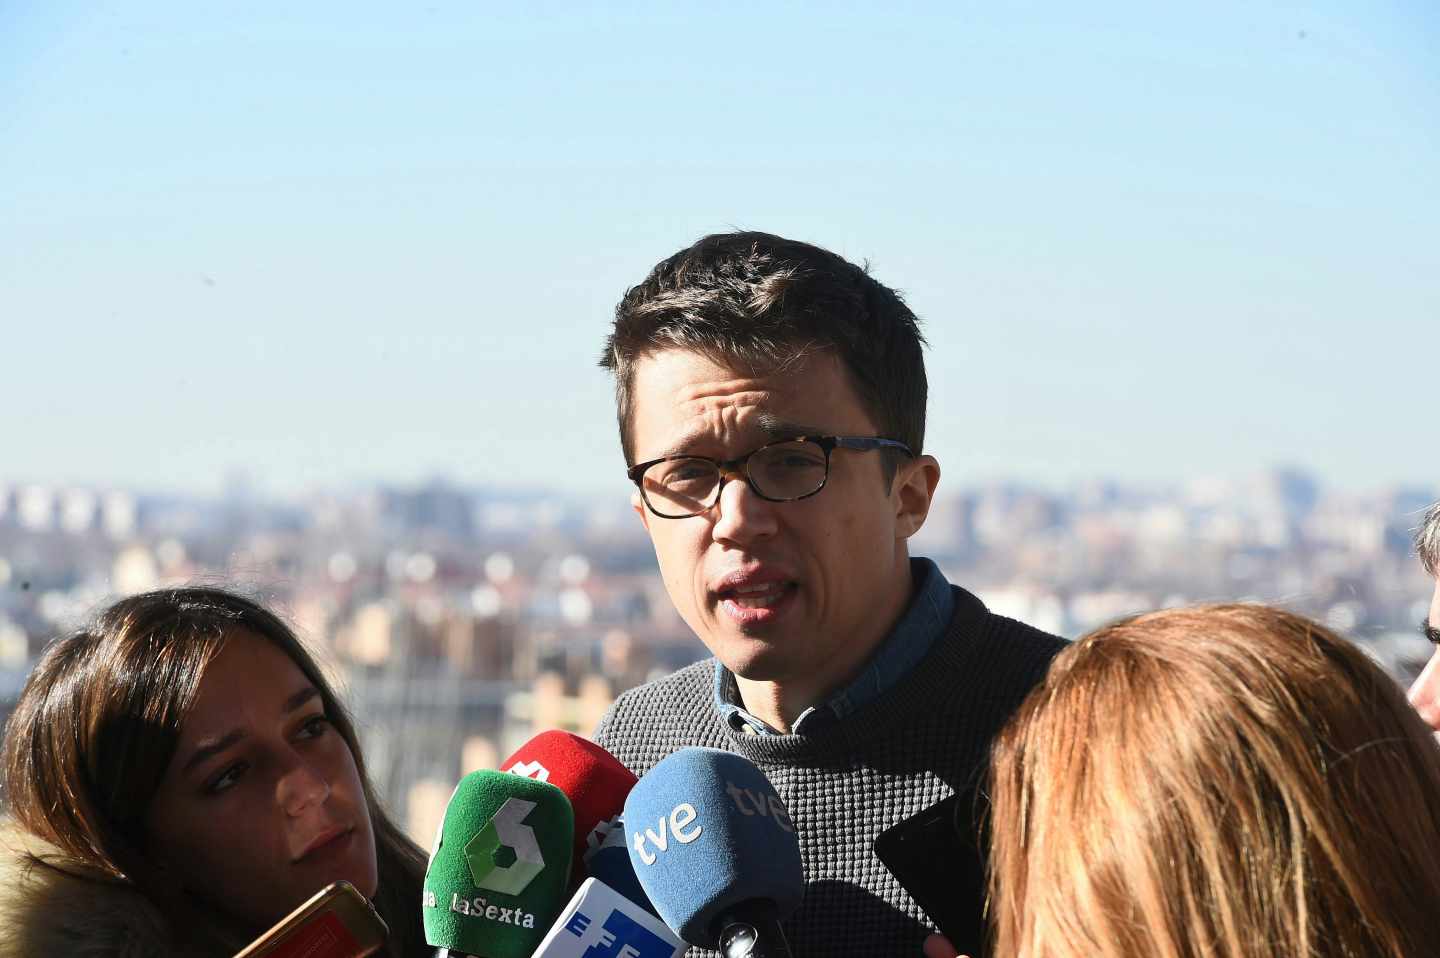 Anticapitalistas dicen que Errejón no se distingue del PSOE y piden otro candidato